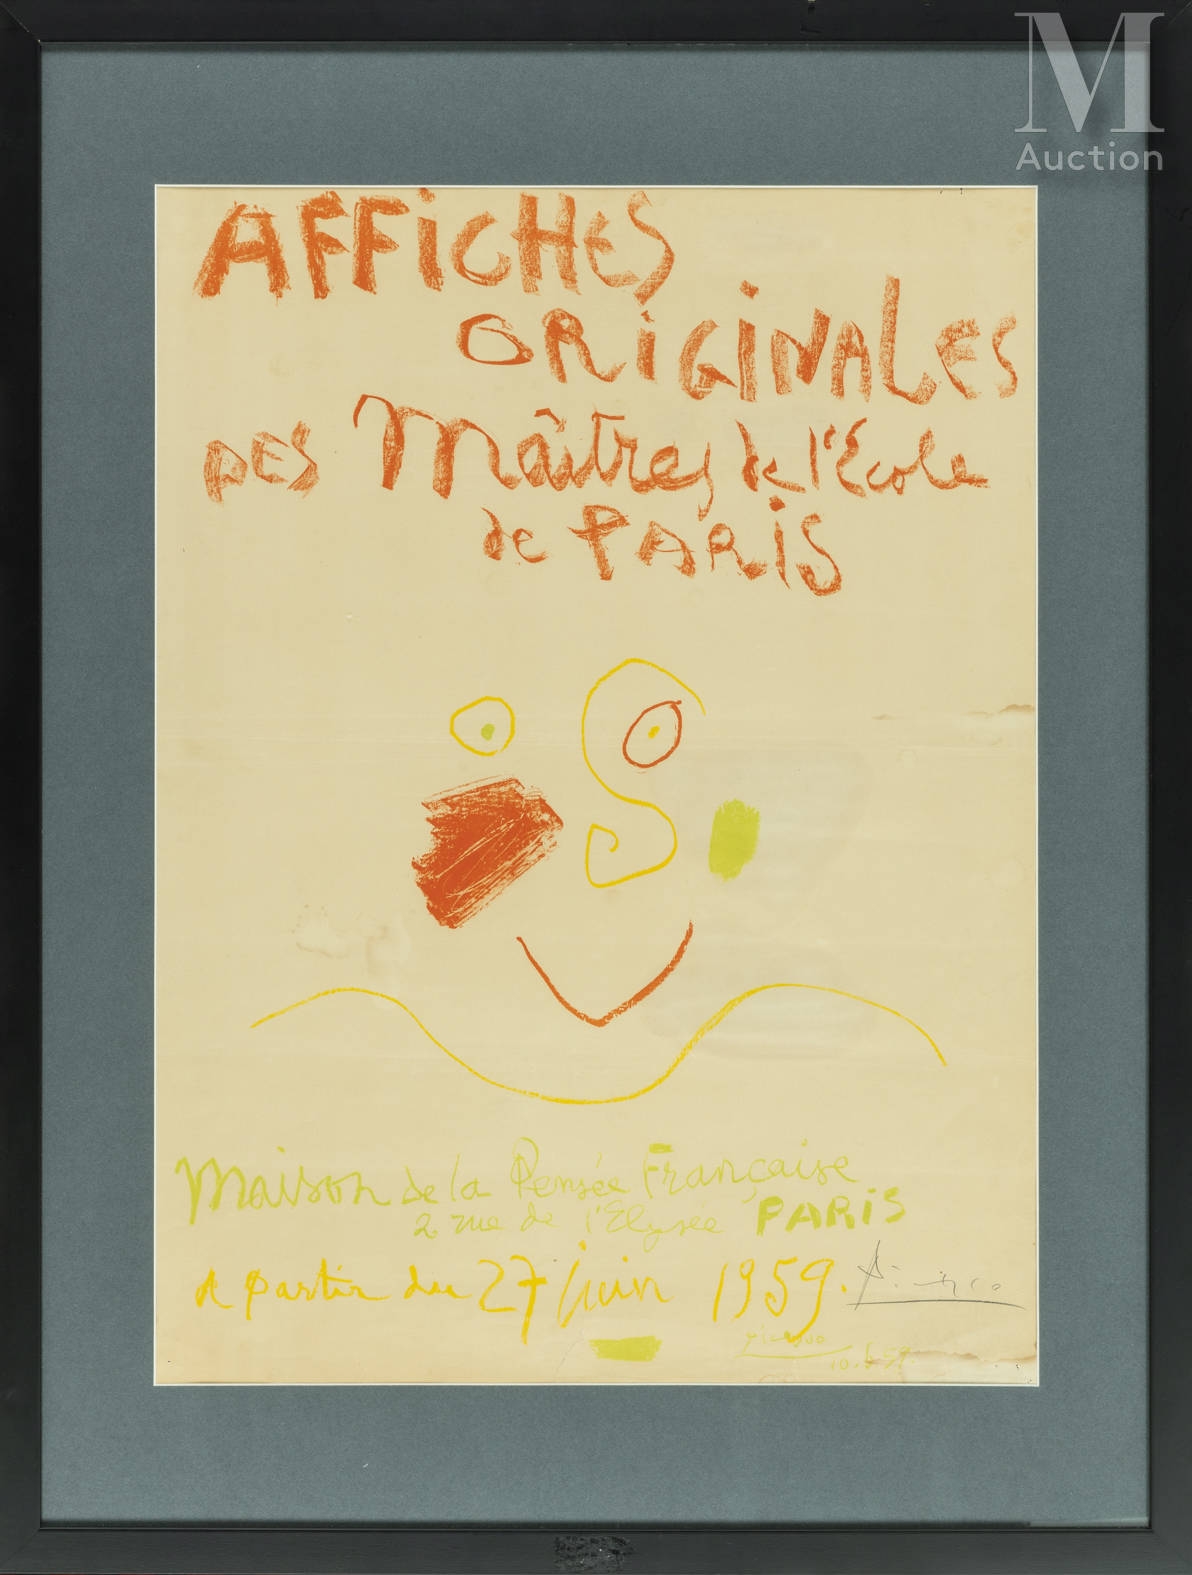 Affiches originales des maîtres de l'école de Paris, Maison de la Pensée Française by Pablo Picasso, 1959